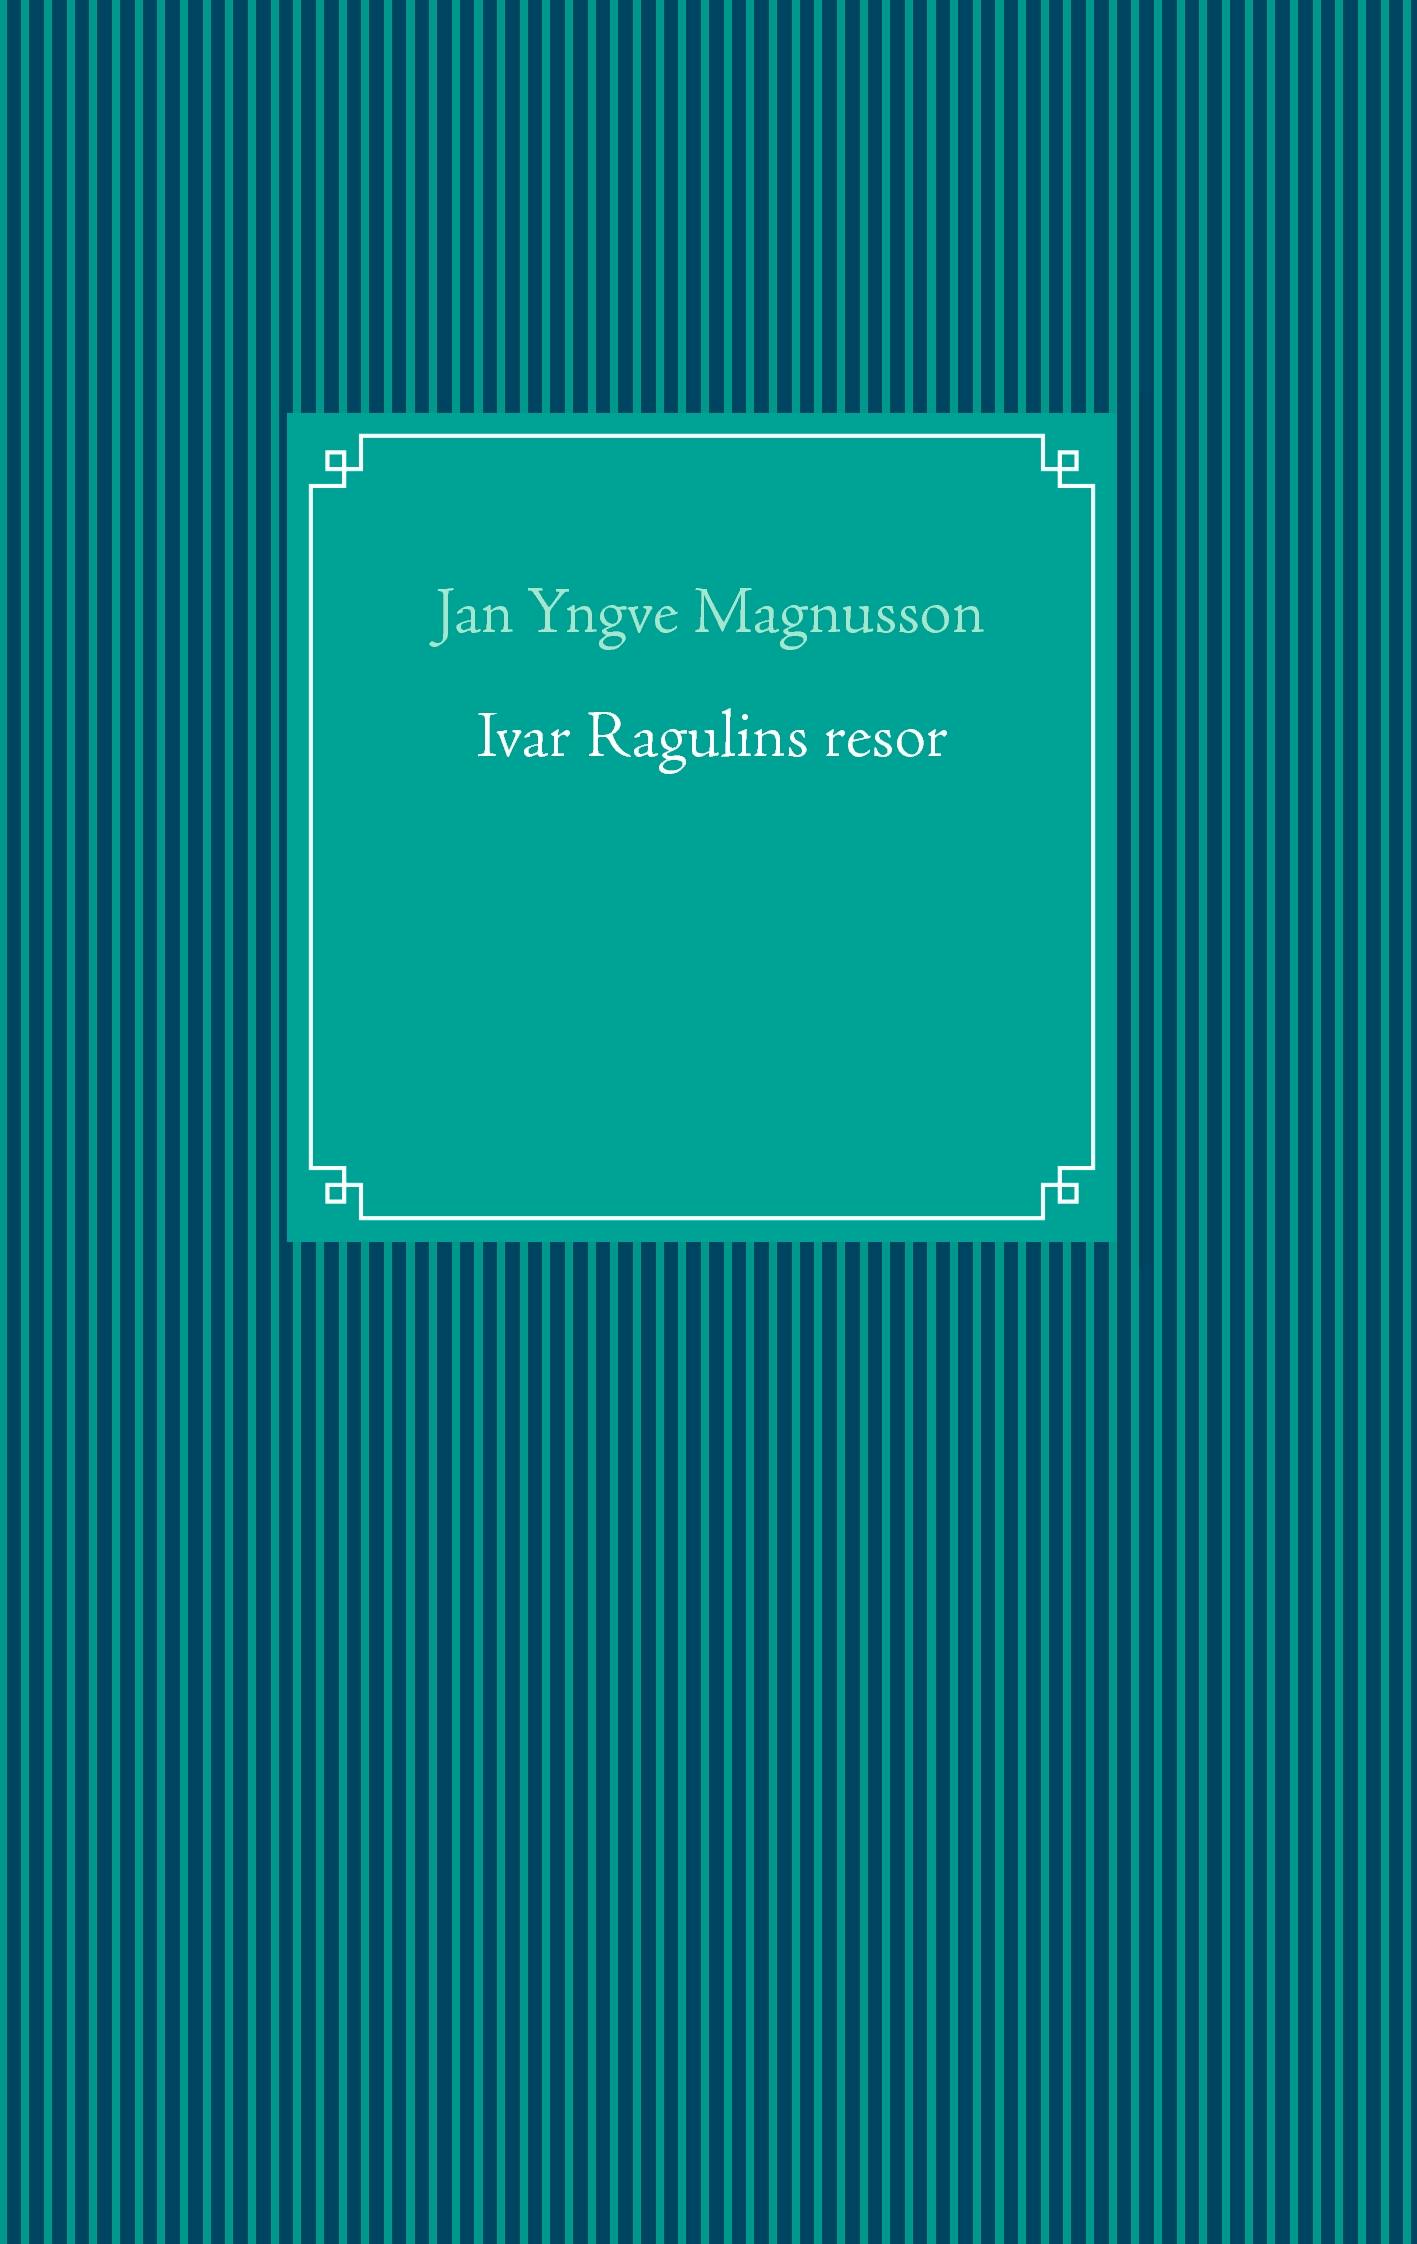 Ivar Ragulins resor - Jan Yngve Magnusson